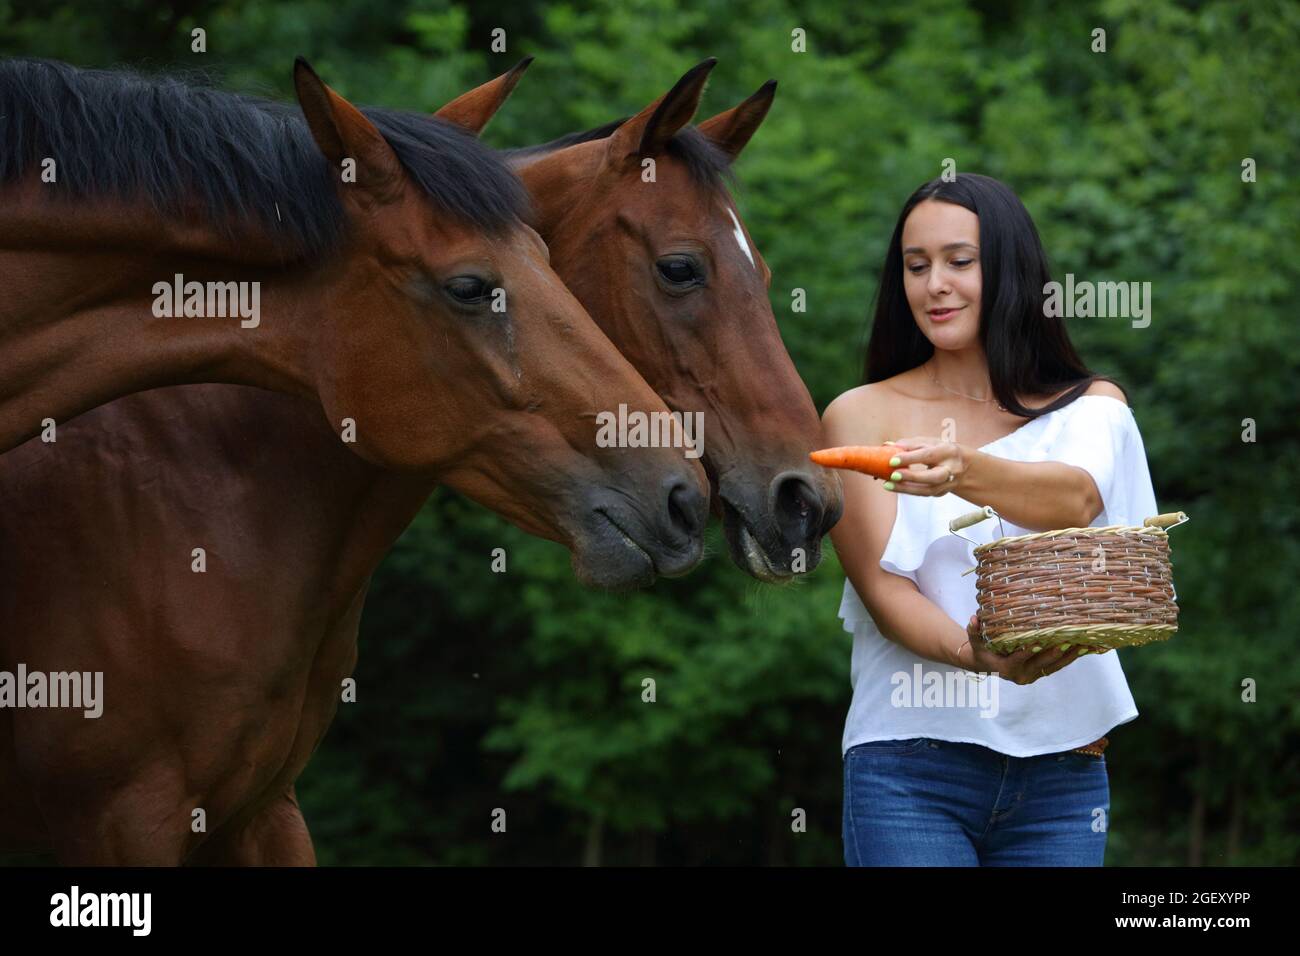 Beauty girl treats sweet carrots to horses Stock Photo